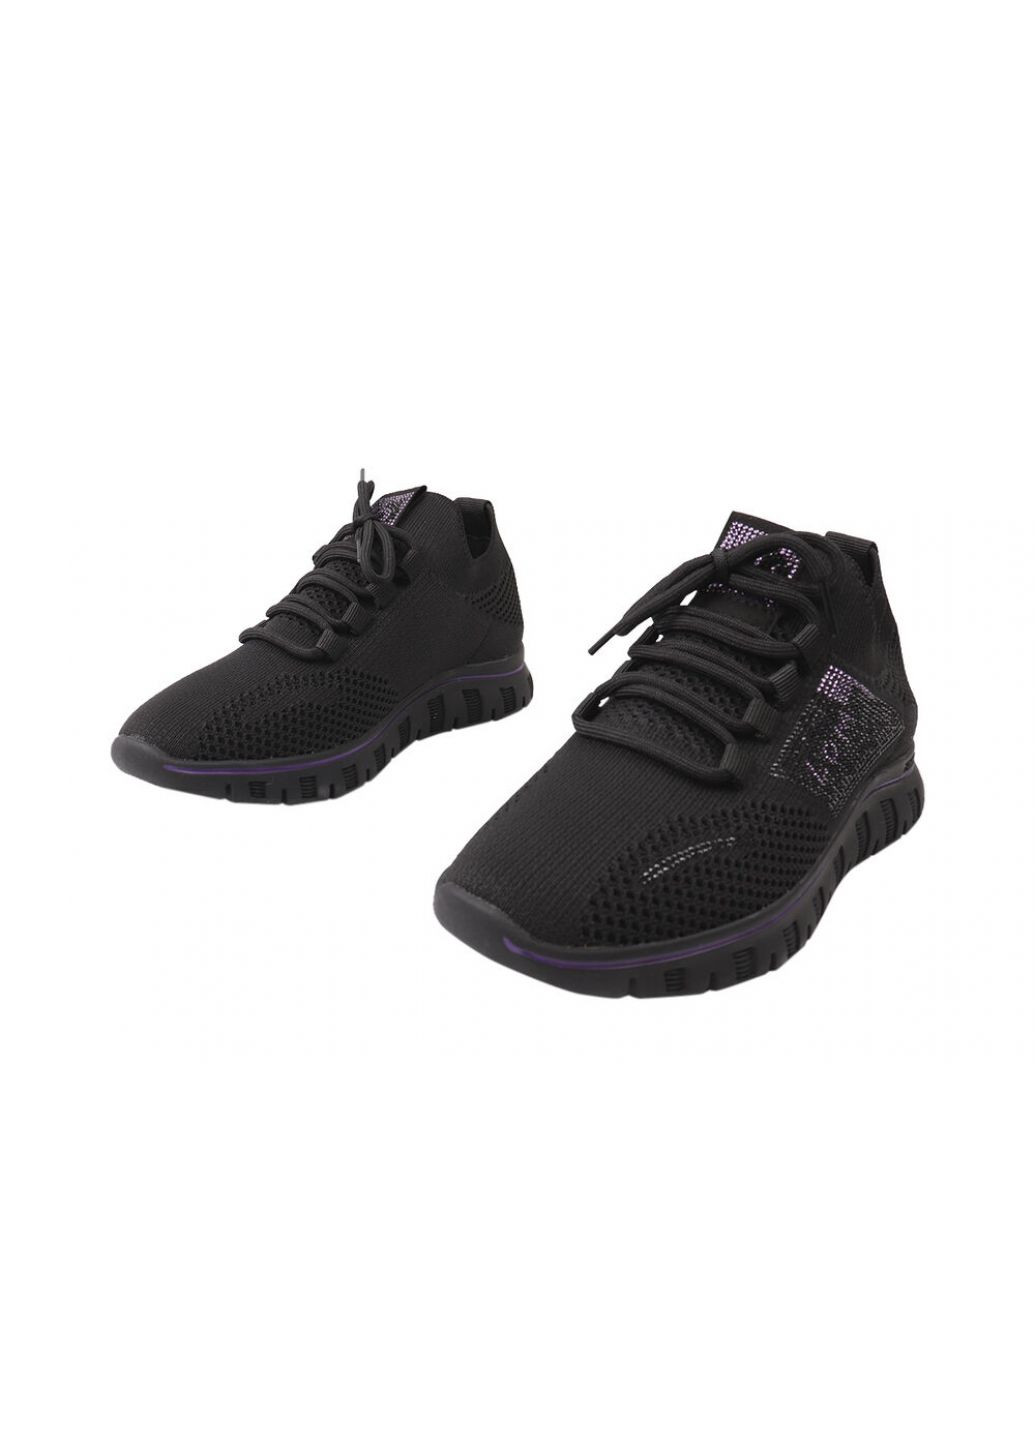 Черные кроссовки женские из текстиля, на низком ходу, черные, Lifexpert 626-21DK